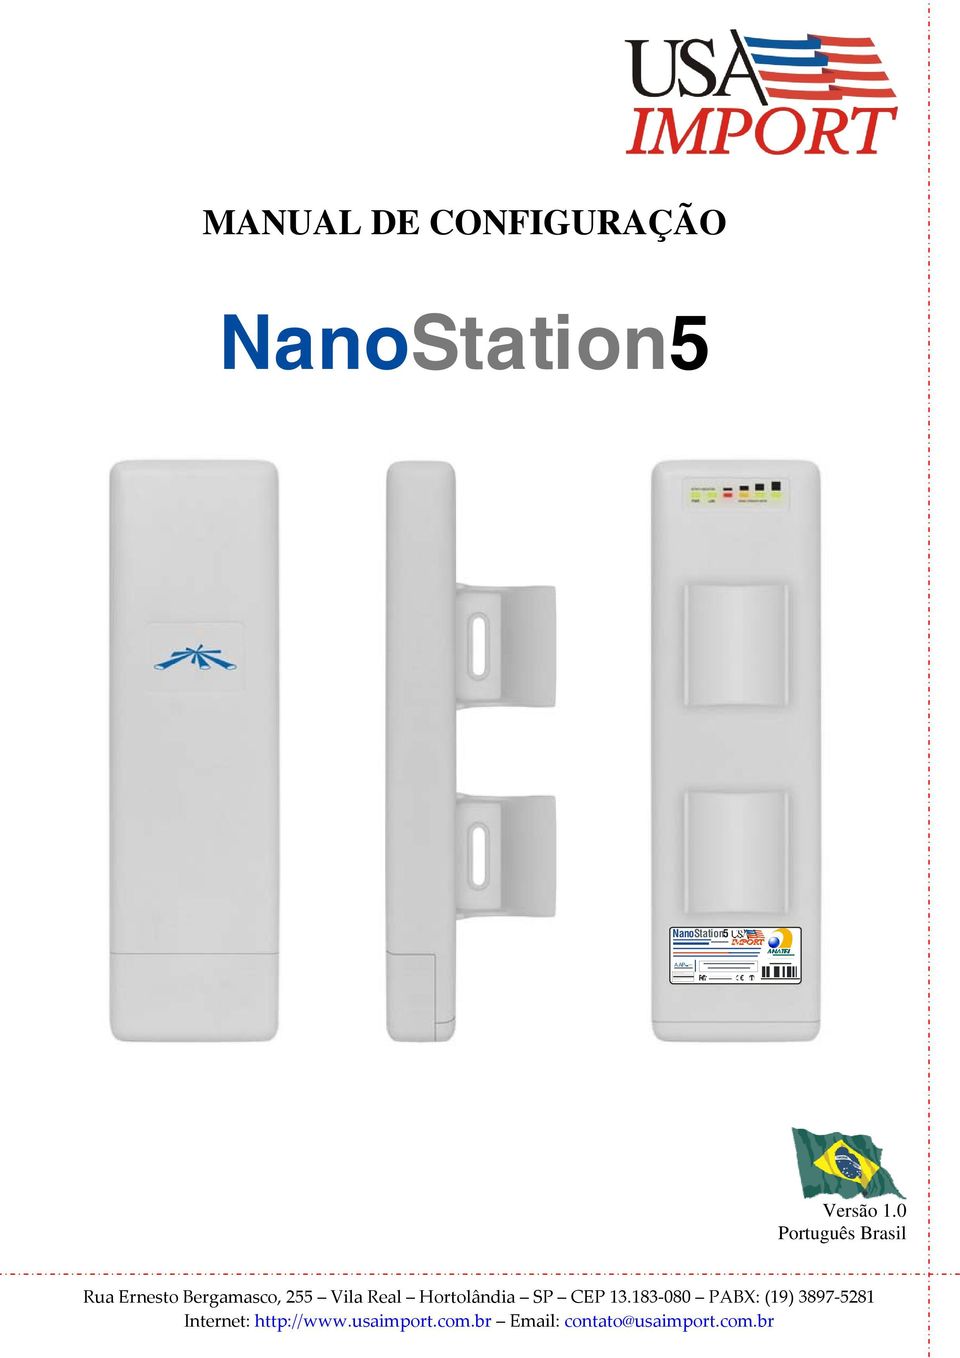 NanoStation5